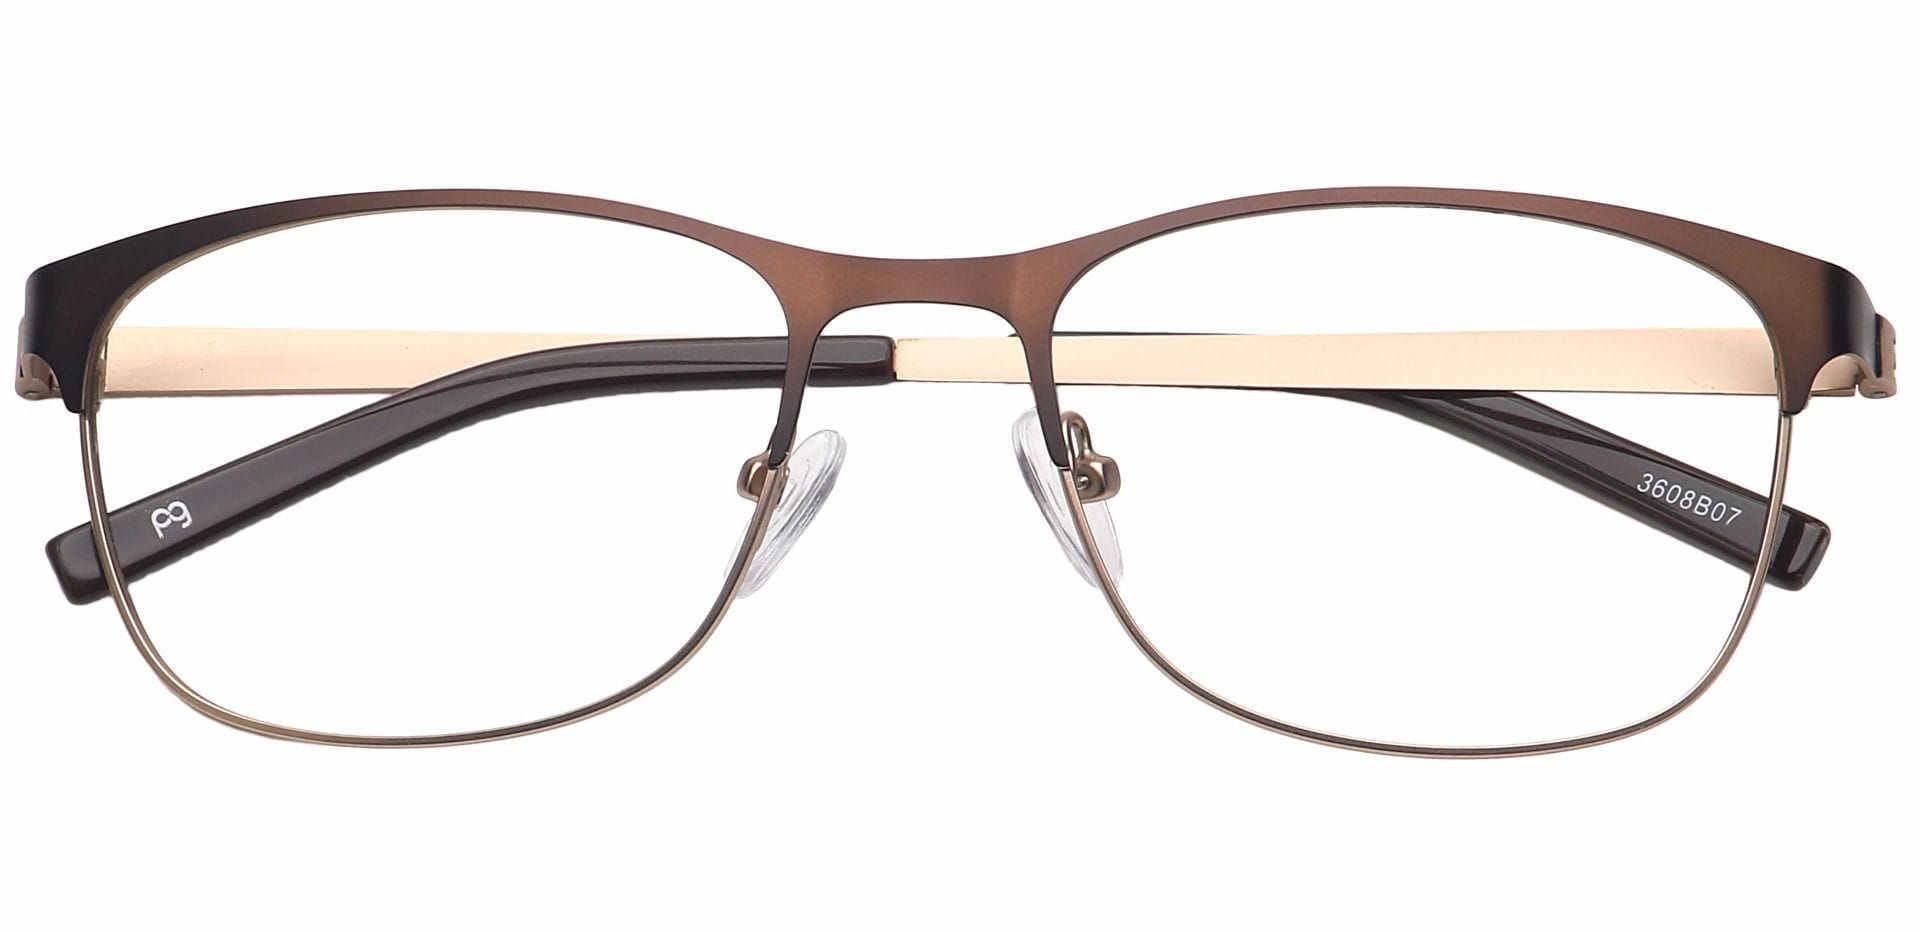 Tona Rectangle Non-Rx Glasses - Brown